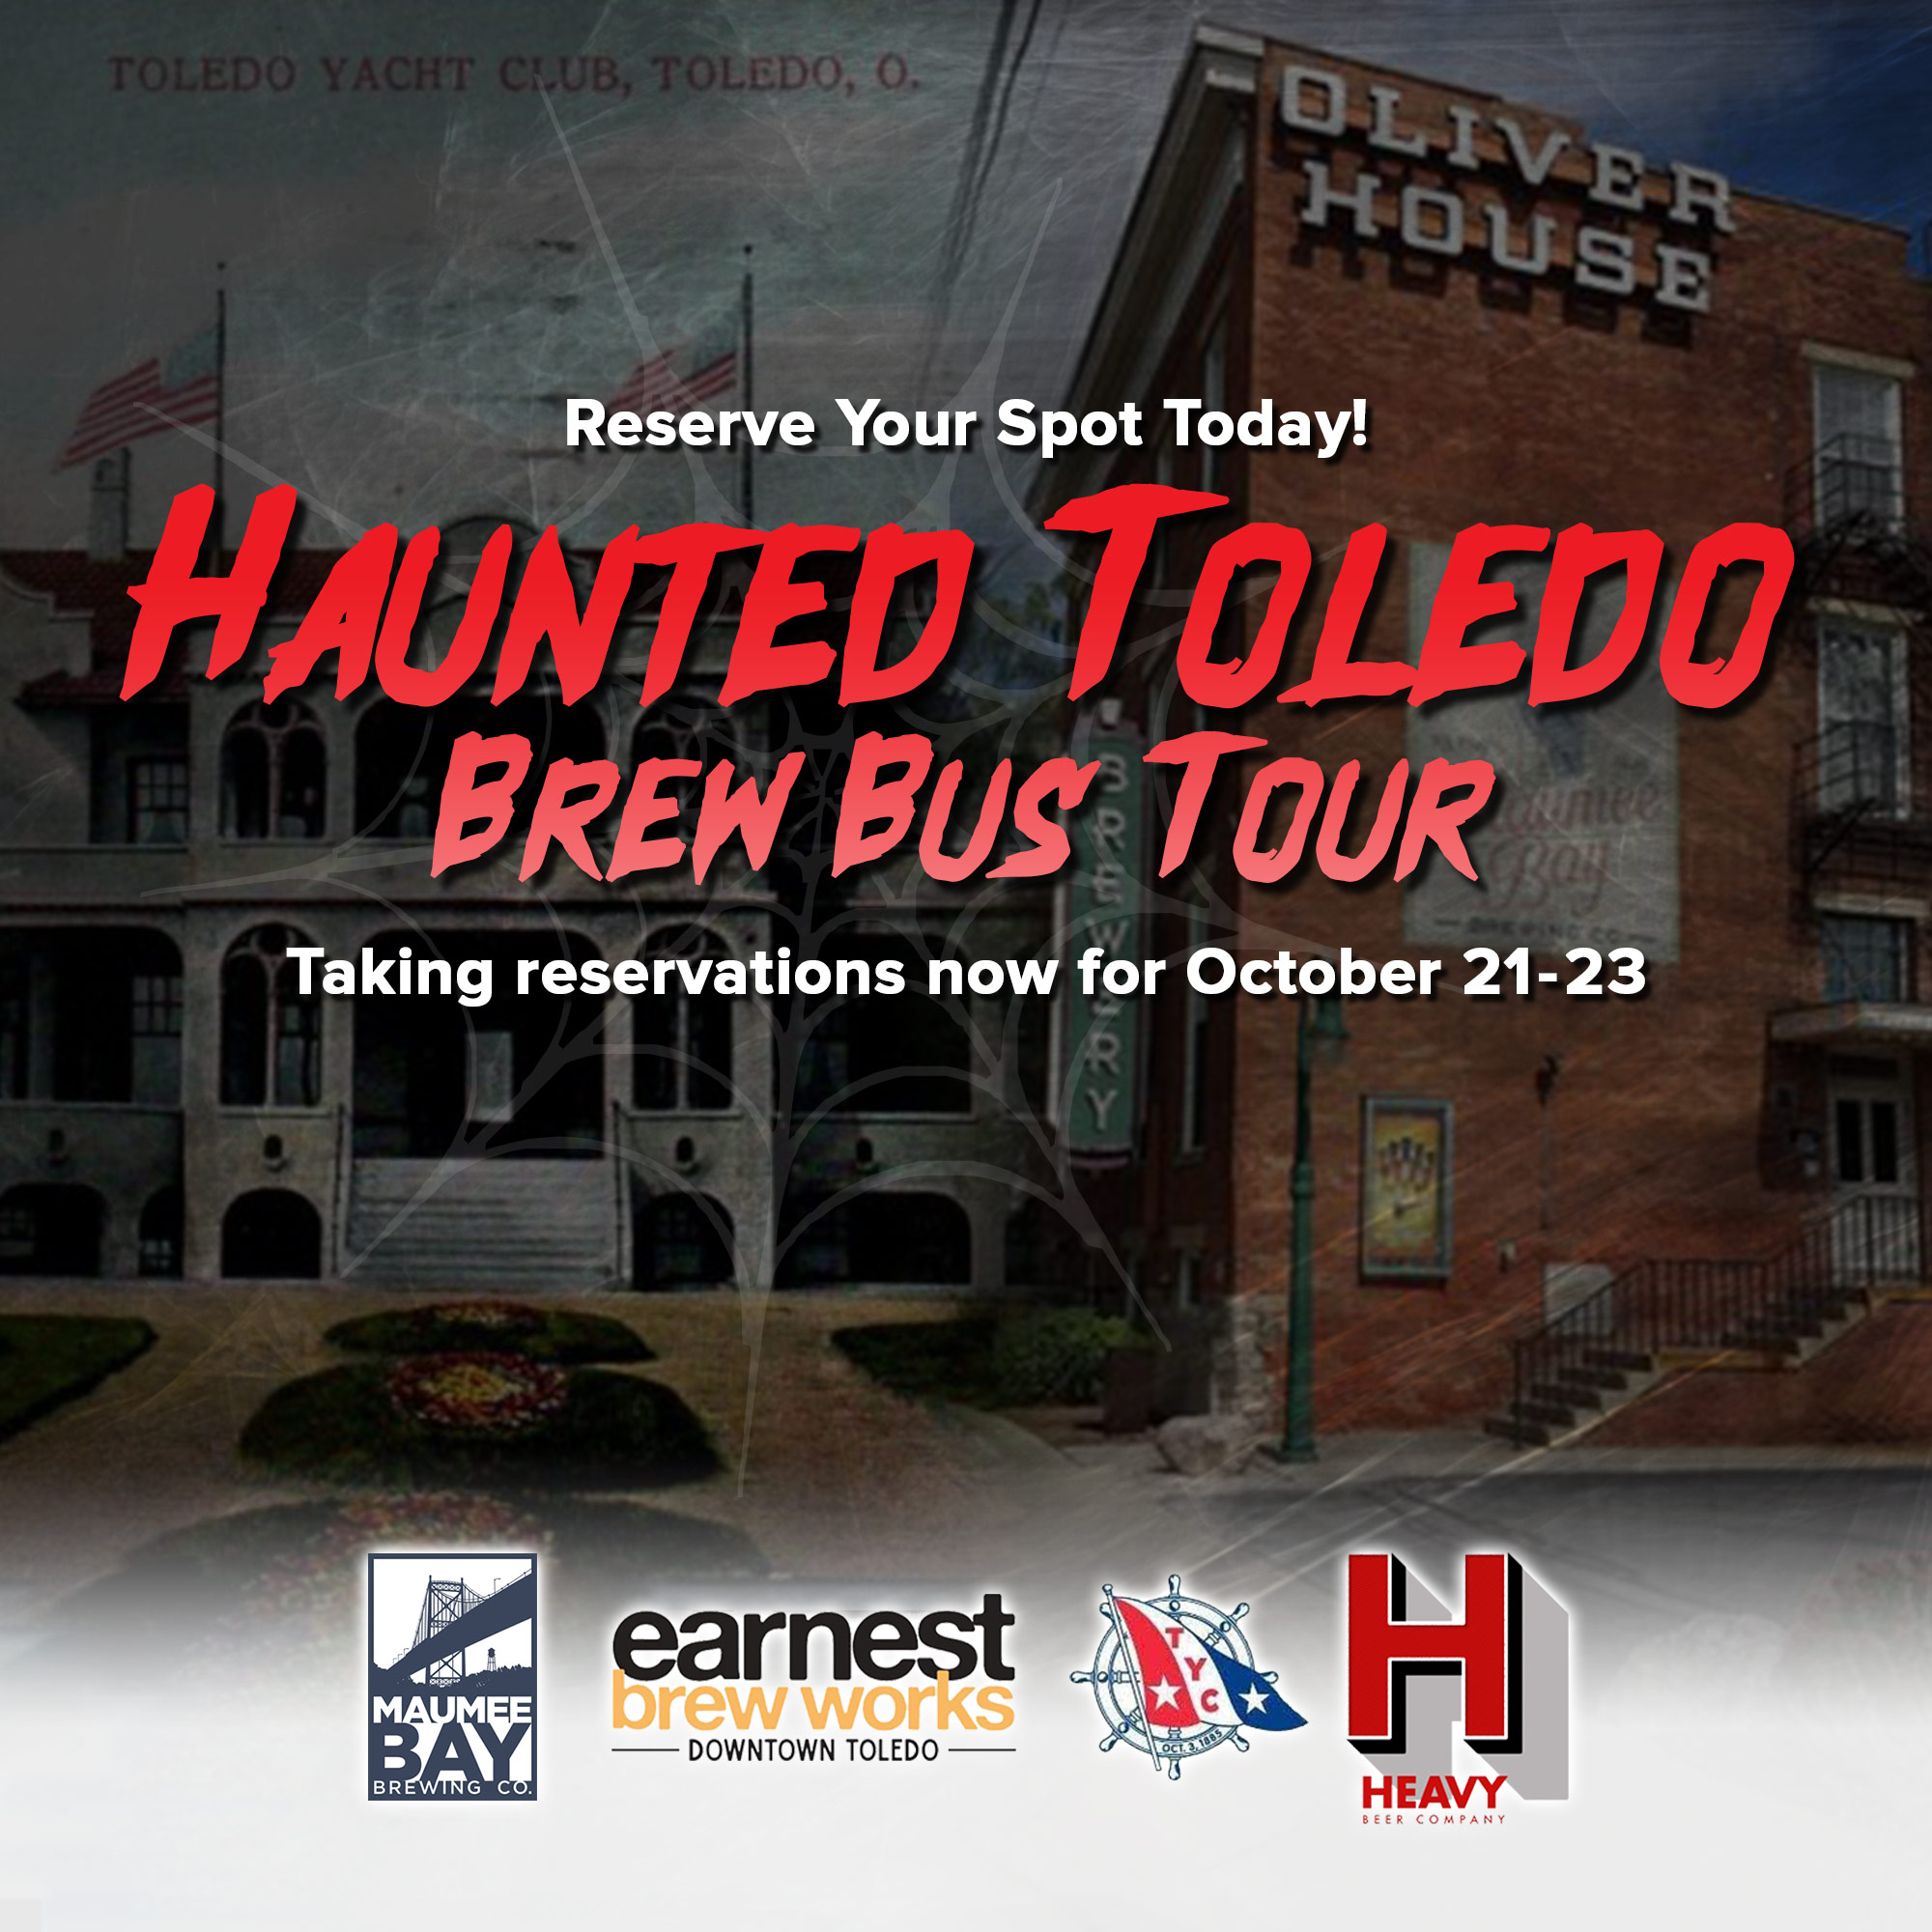 Haunted Toledo Brew Bus Tour